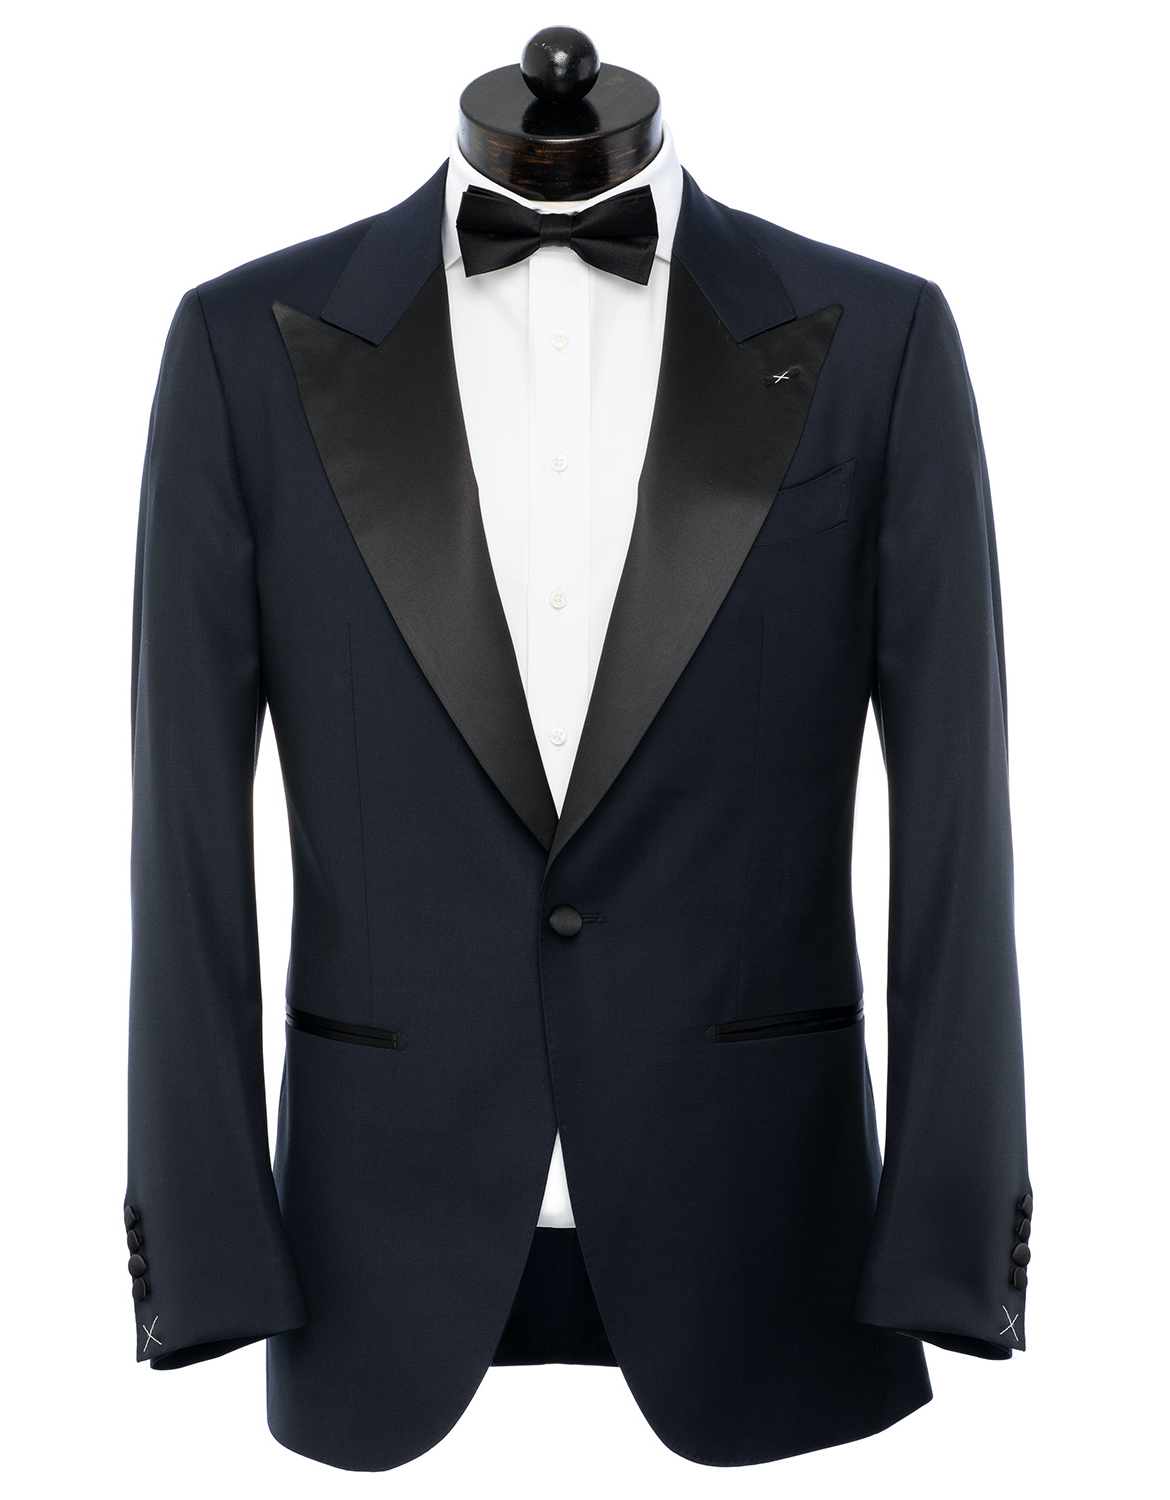 Menswear Musings — Sale Alert—Suit Sale at Spier & Mackay, Code SUITS ...